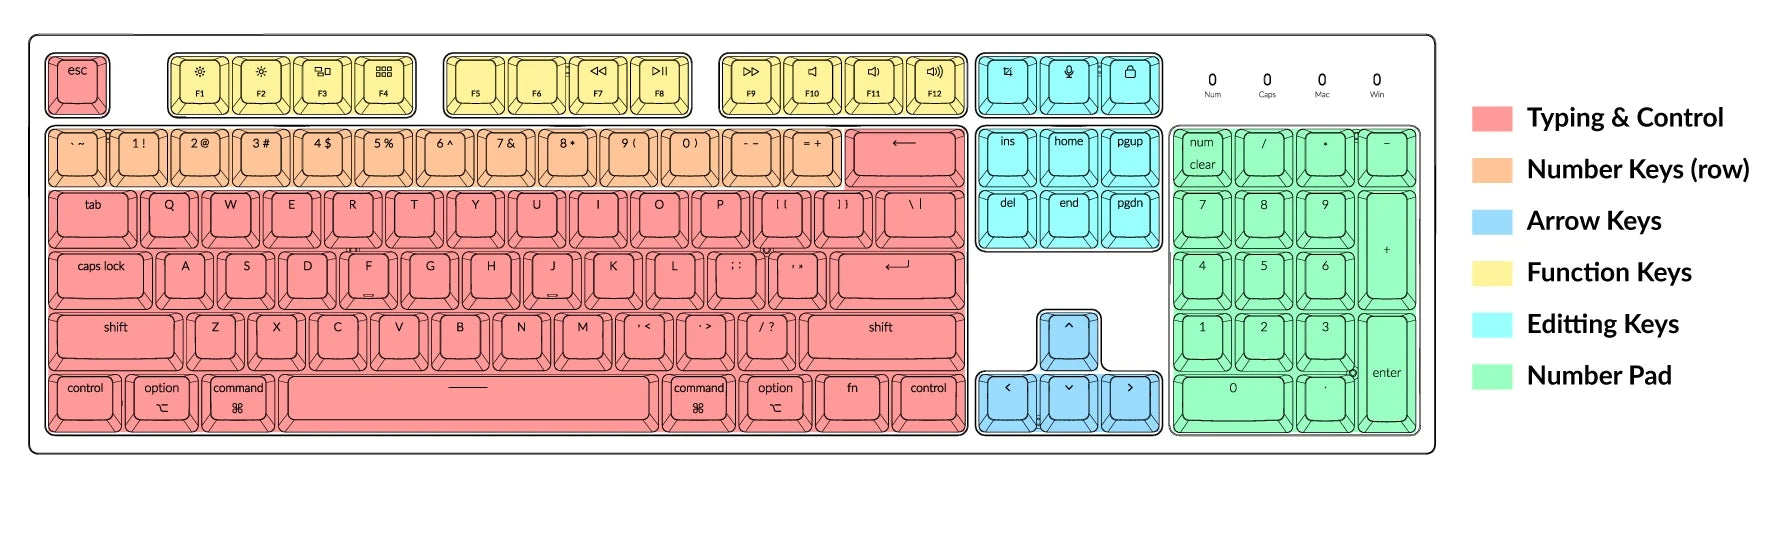 68 Keyboard Layout